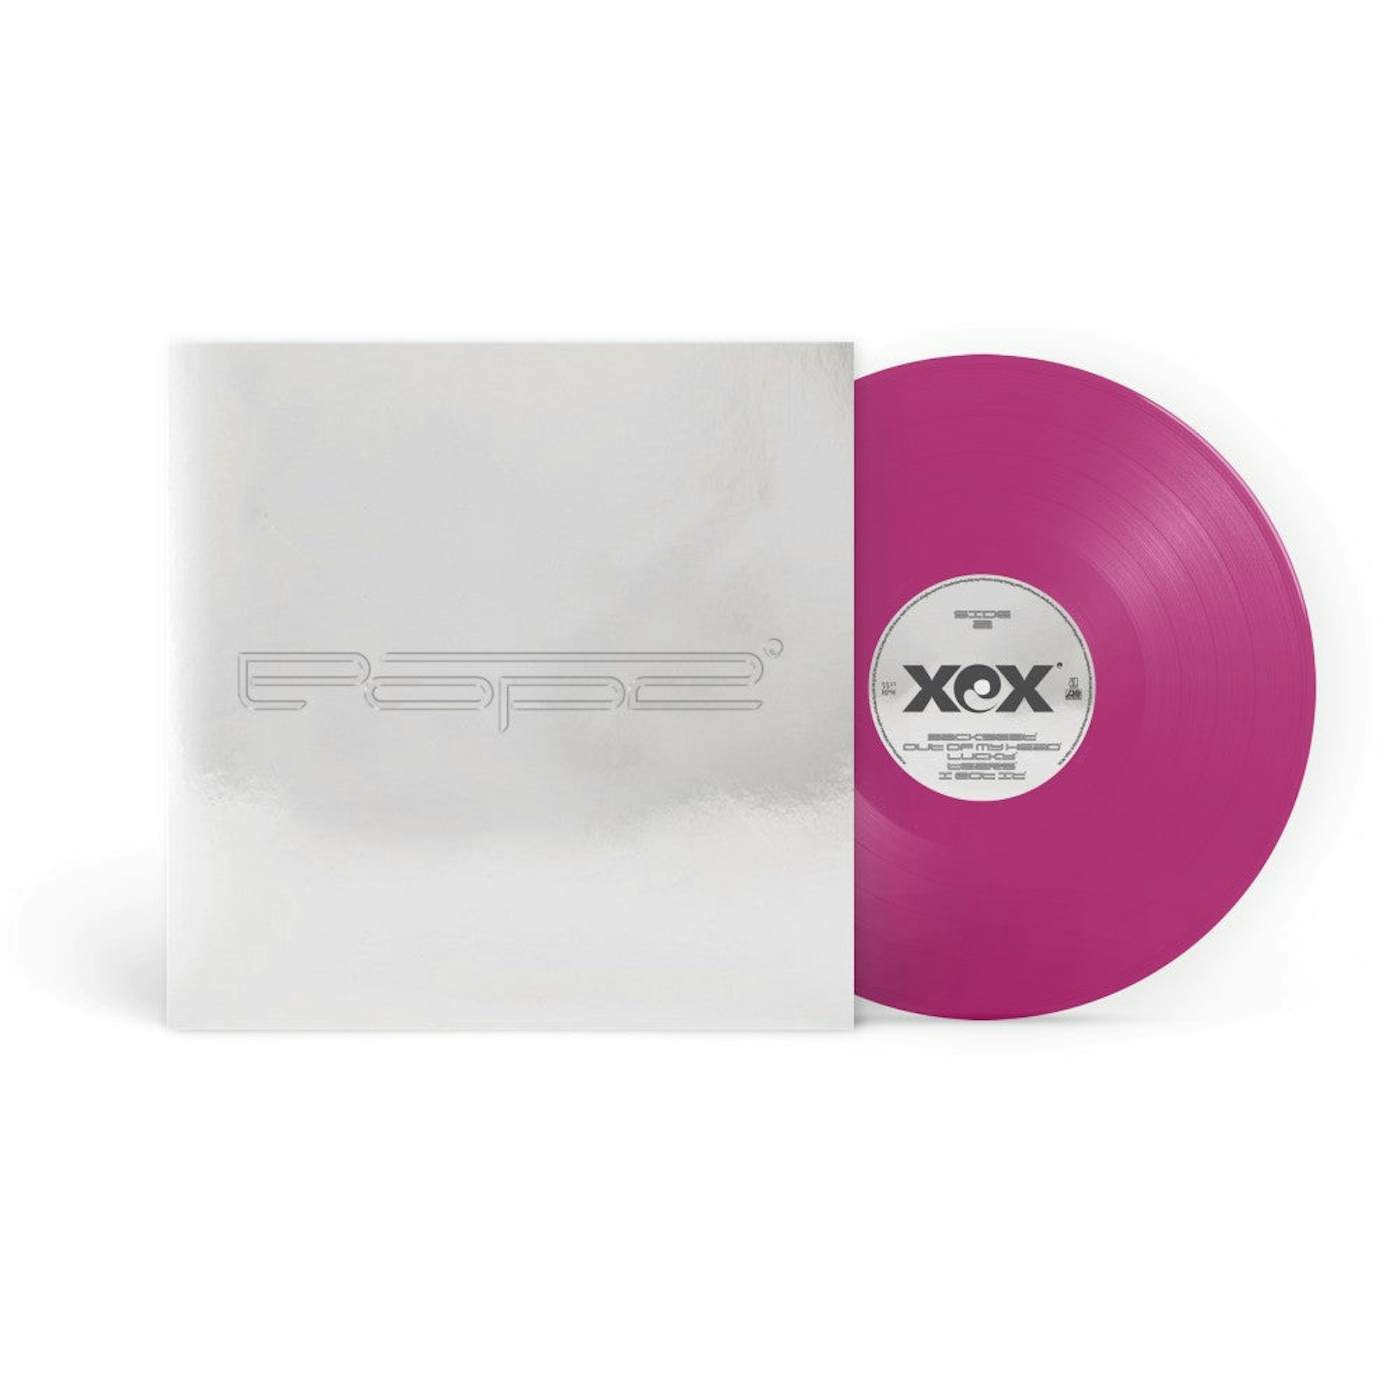 Charli XCX Pop 2 (5 Year Anniversary Vinyl)